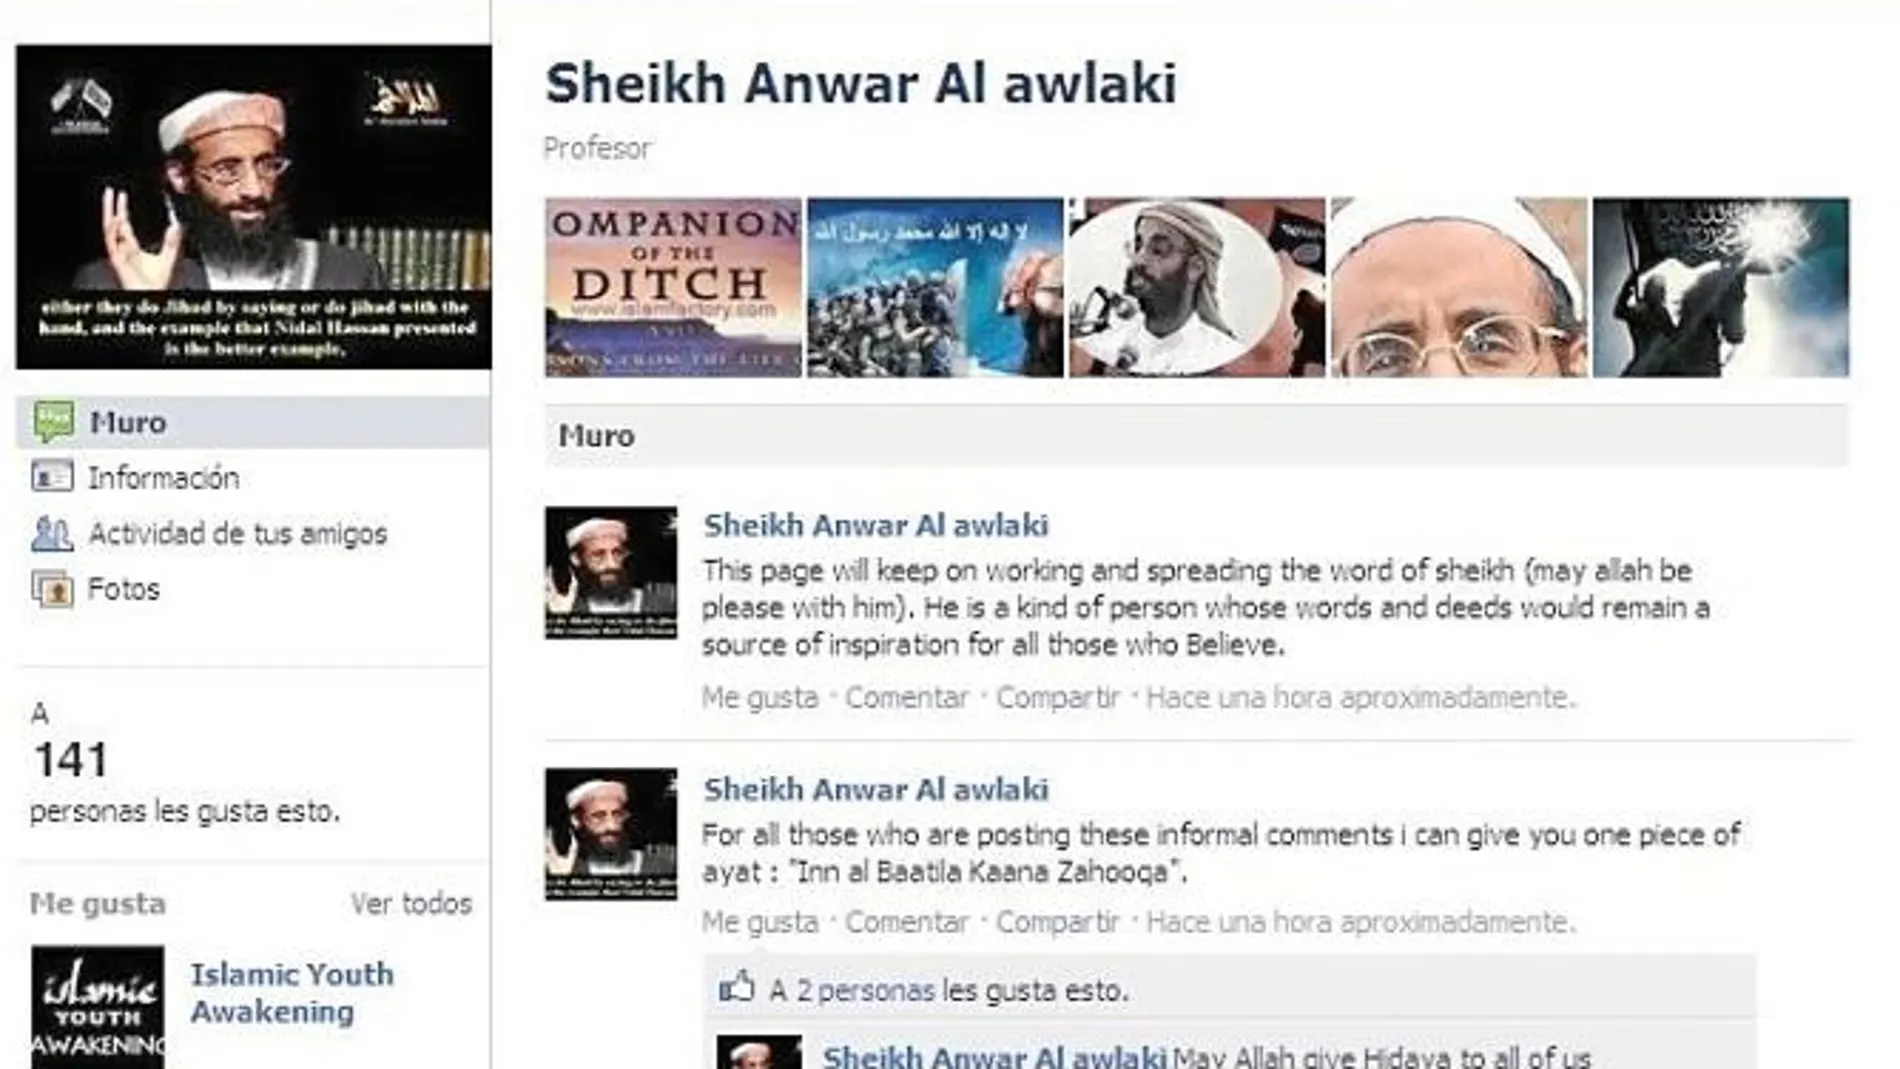 Al AWlaki disponía de un blog en el que captaba a jóvenes musulmanes y de una página en Facebook. Además, era un experto en sortear los controles de You Tube para colgar vídeos